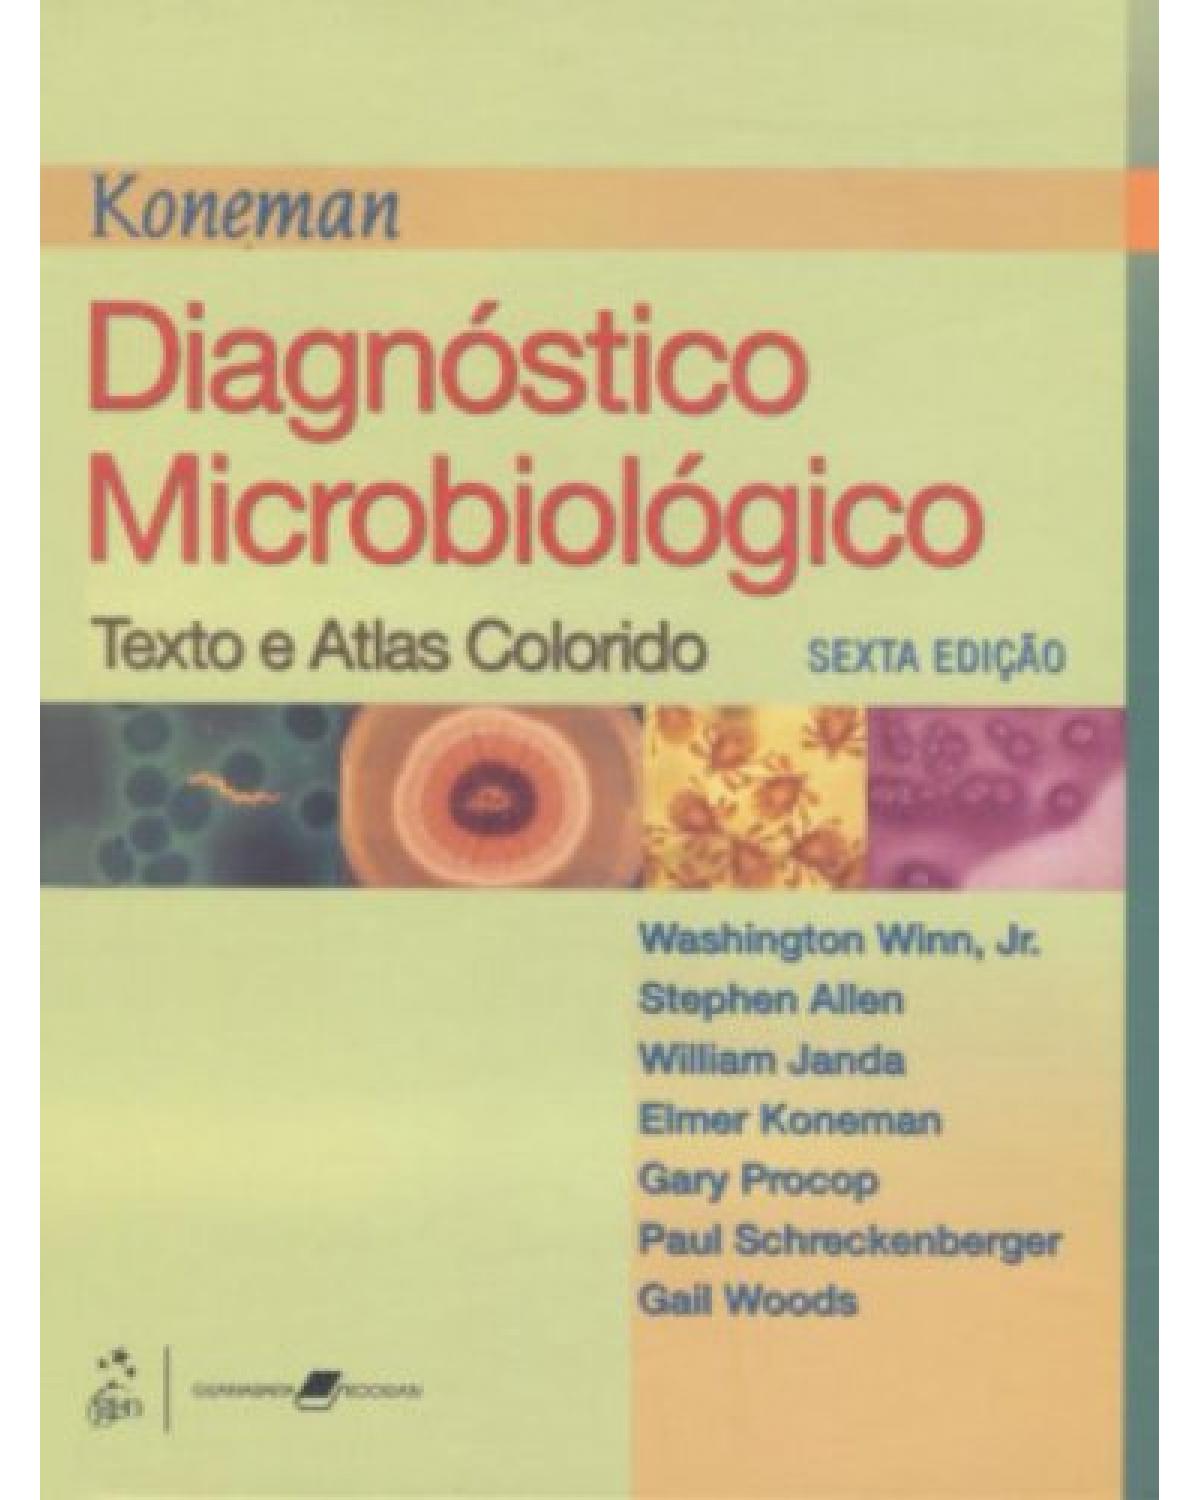 Koneman - Diagnóstico microbiológico - Texto e atlas colorido - 6ª Edição | 2008